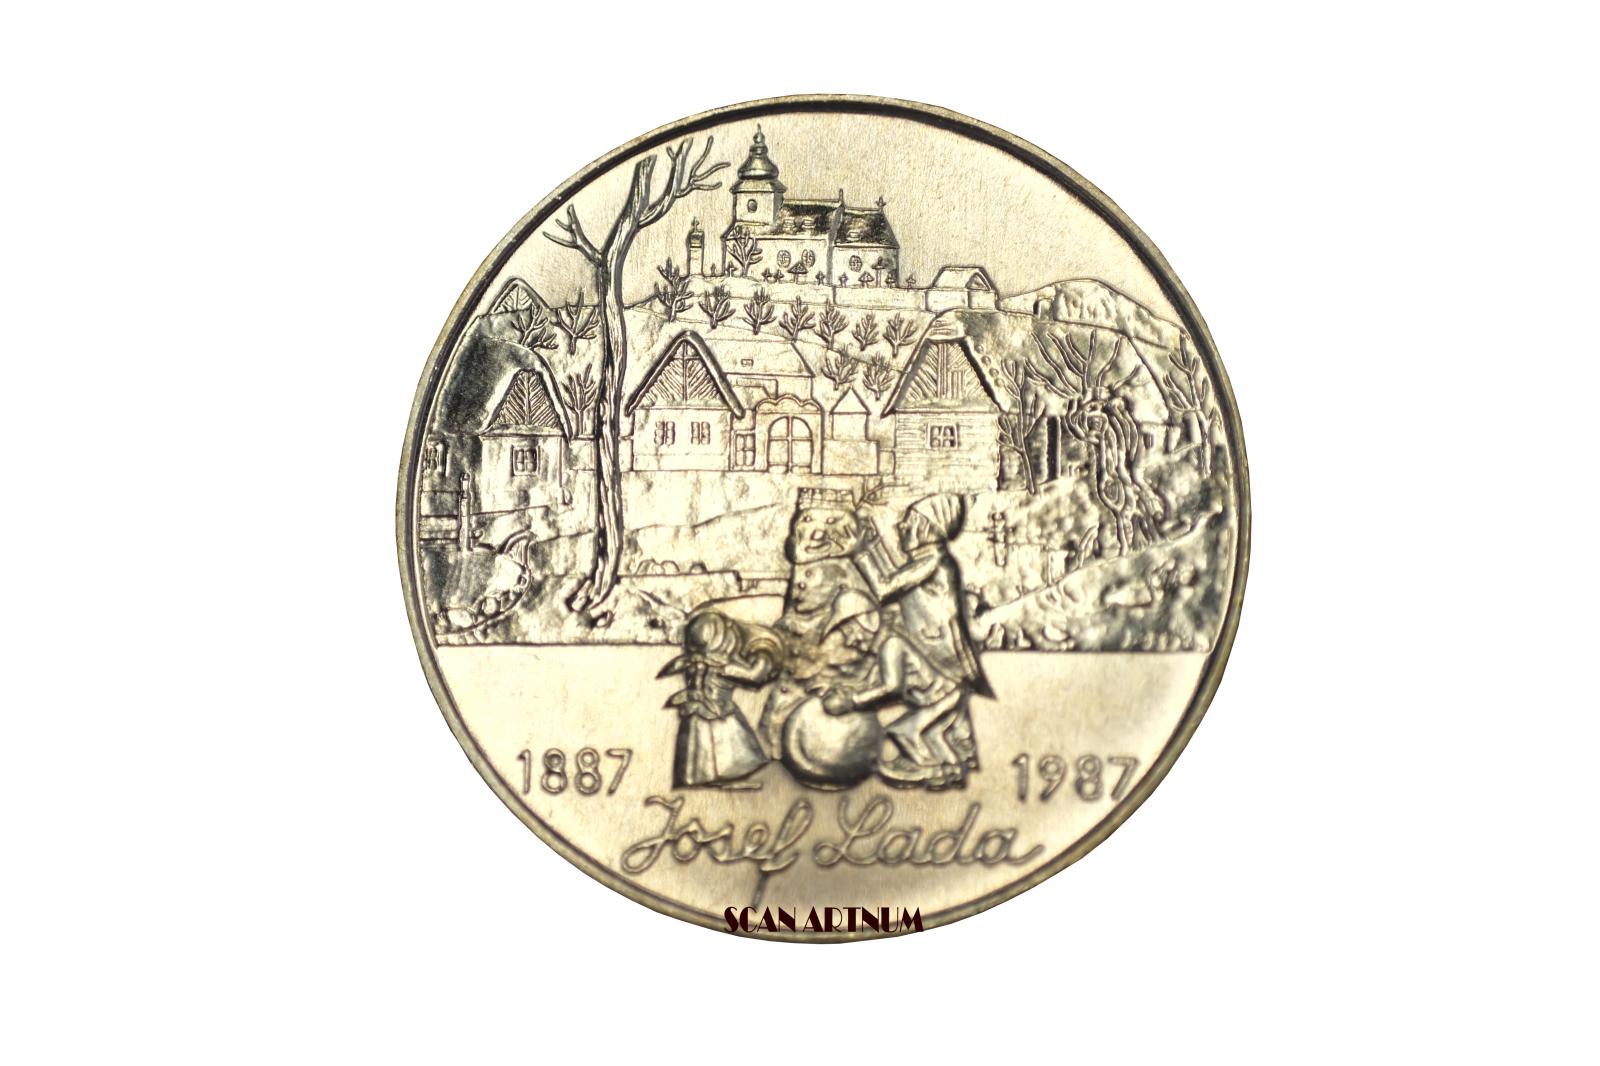 Vzácna minca 500 kčs 1987 J. Lada krásny zberateľský stav